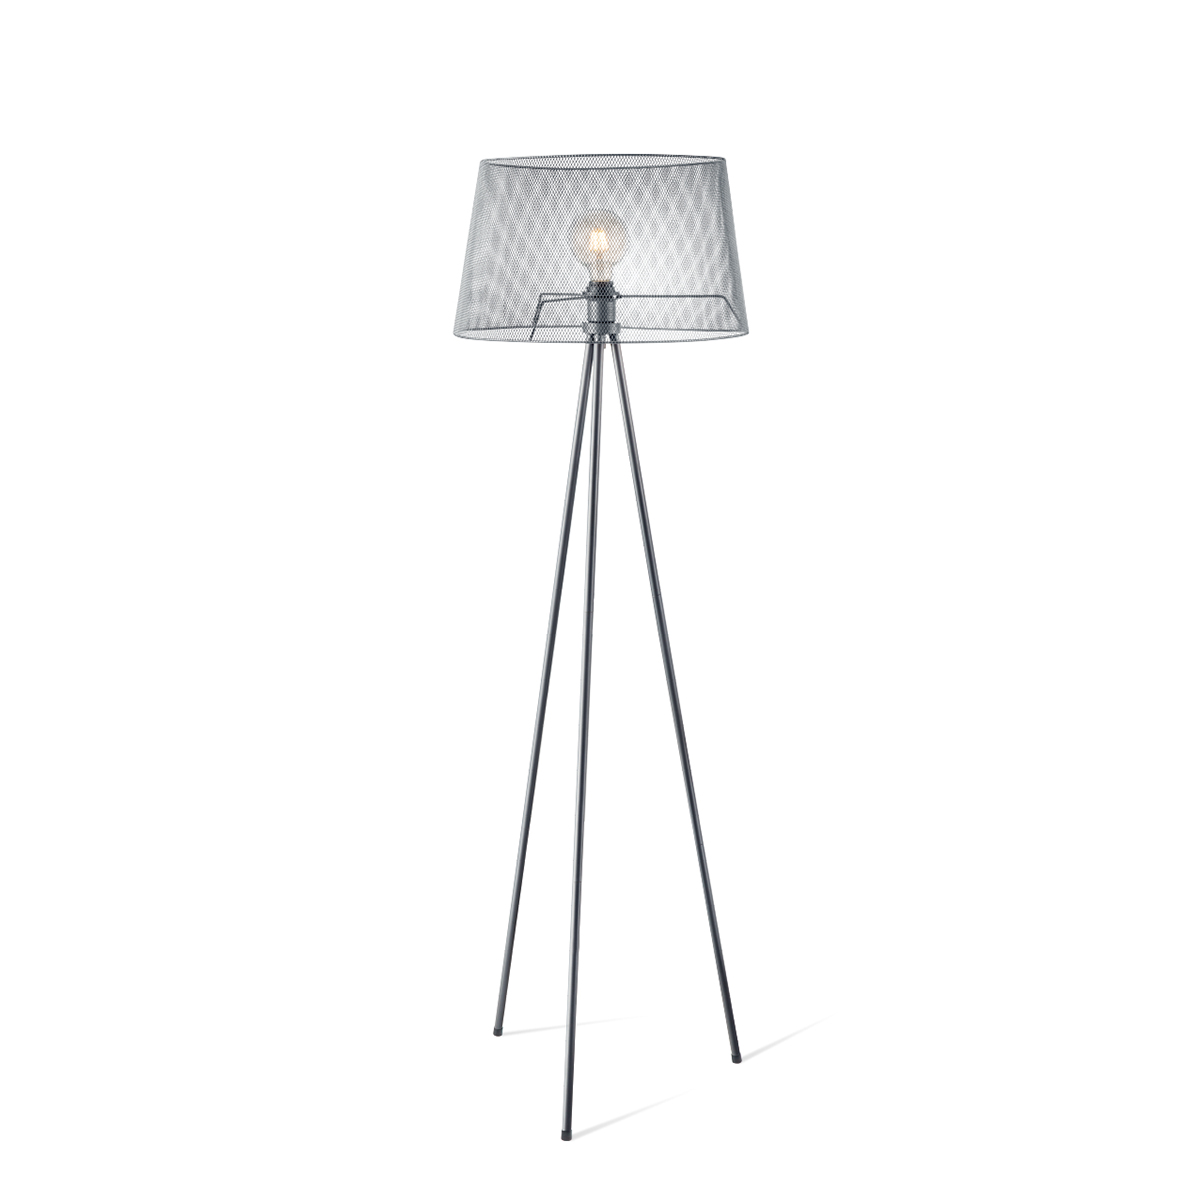 Tangla lighting - TLF2013-01SB - LED floor lamp 1 Light - metal in sand black - E27